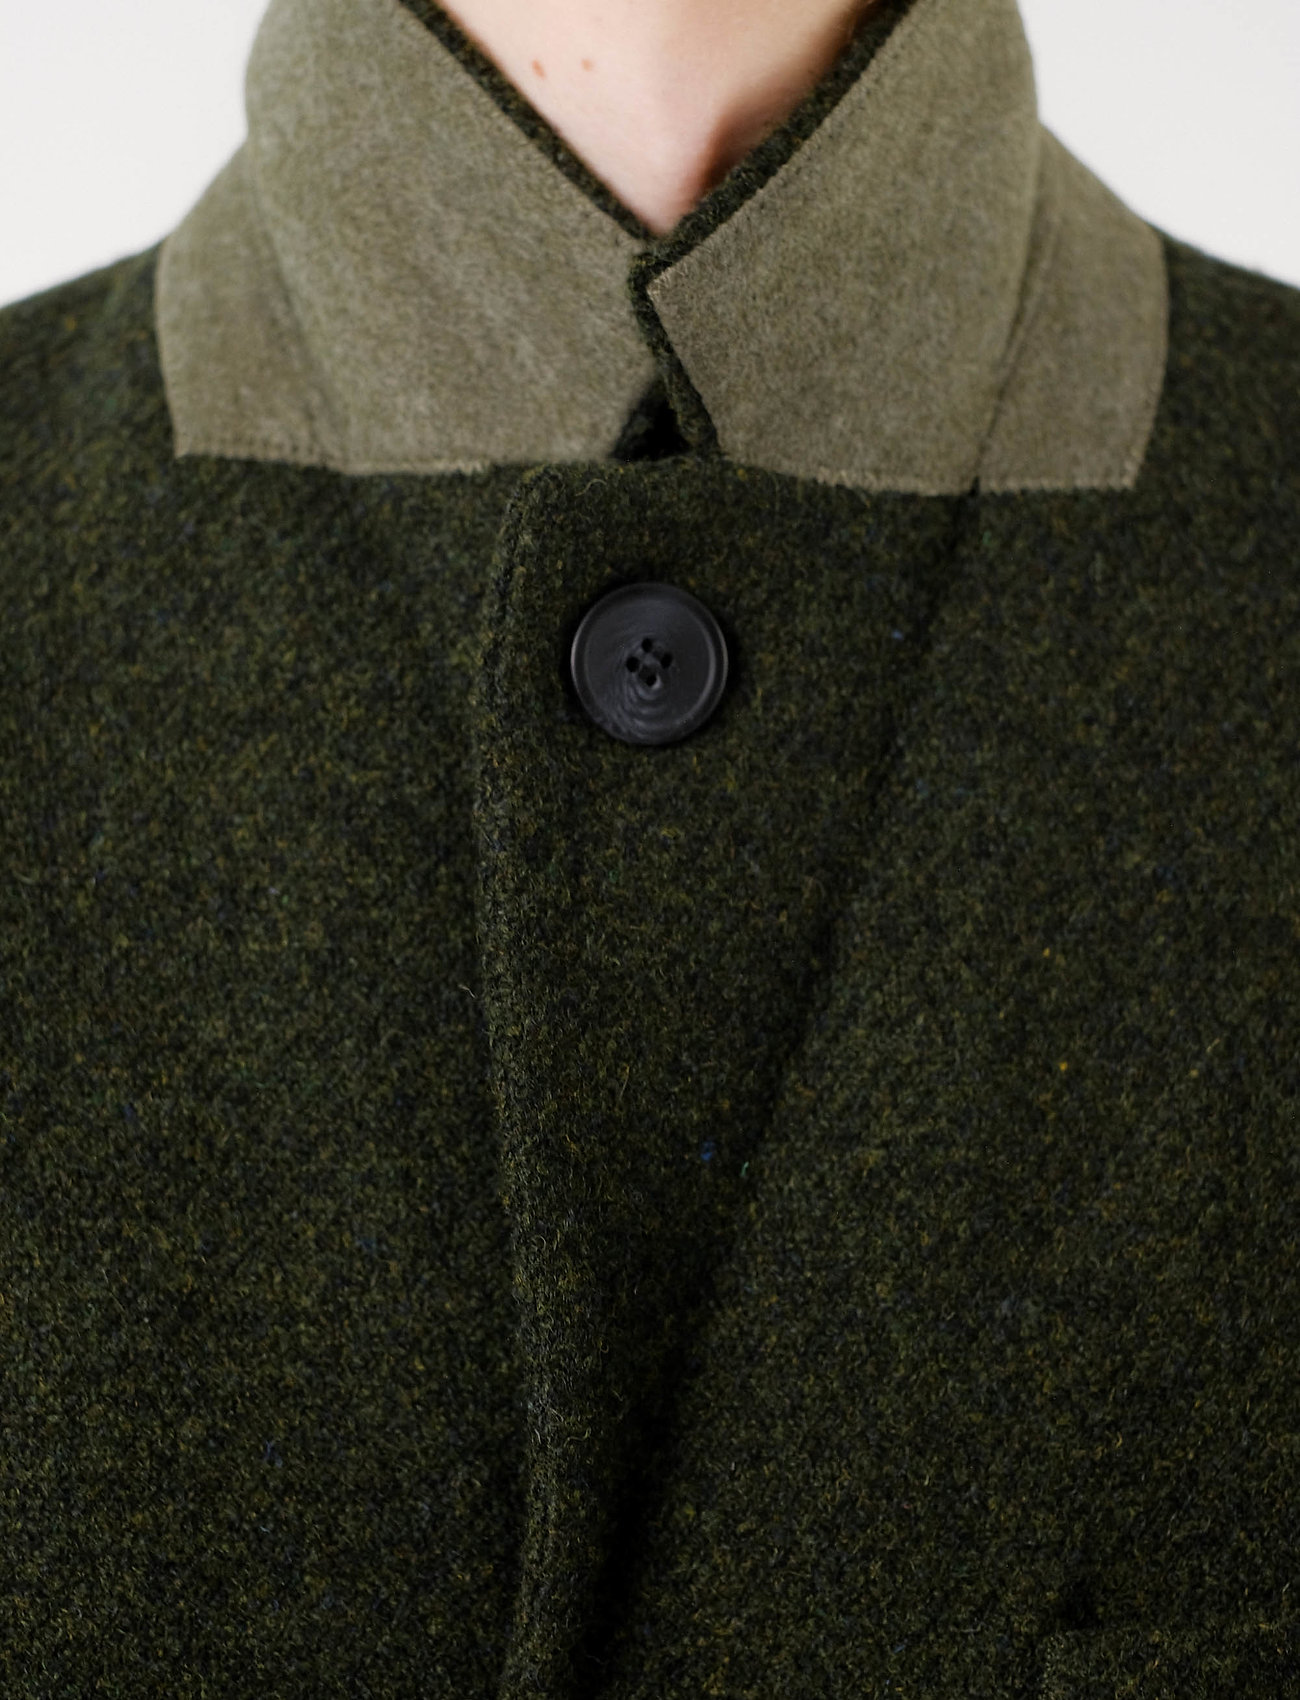 Brixtol Textiles - Ian - manteaux de laine - olive - 6